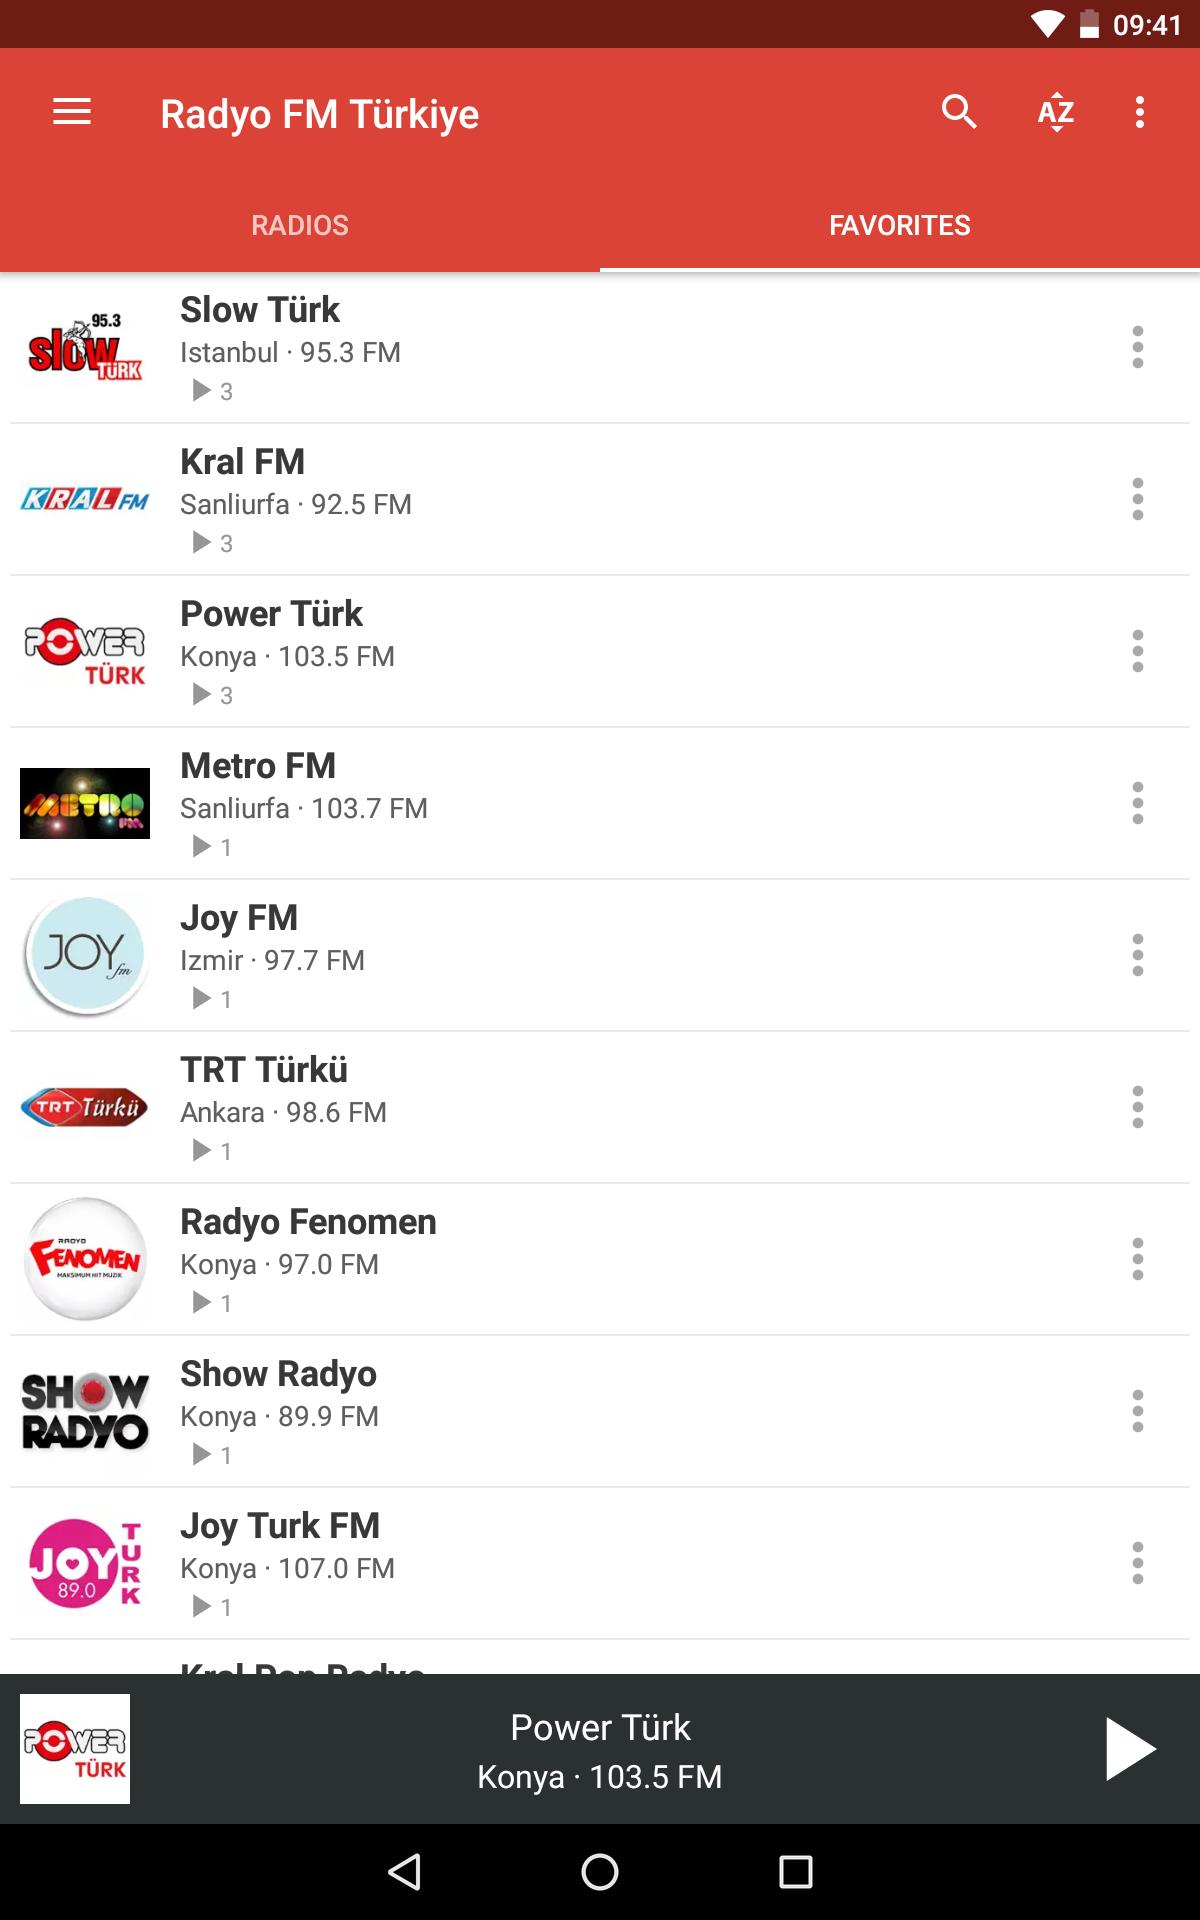 Радио турции. Турецкое радио. Популярные радио в Турции. Радиостанция турецкая самая популярная. Турецкое радио на русском список.